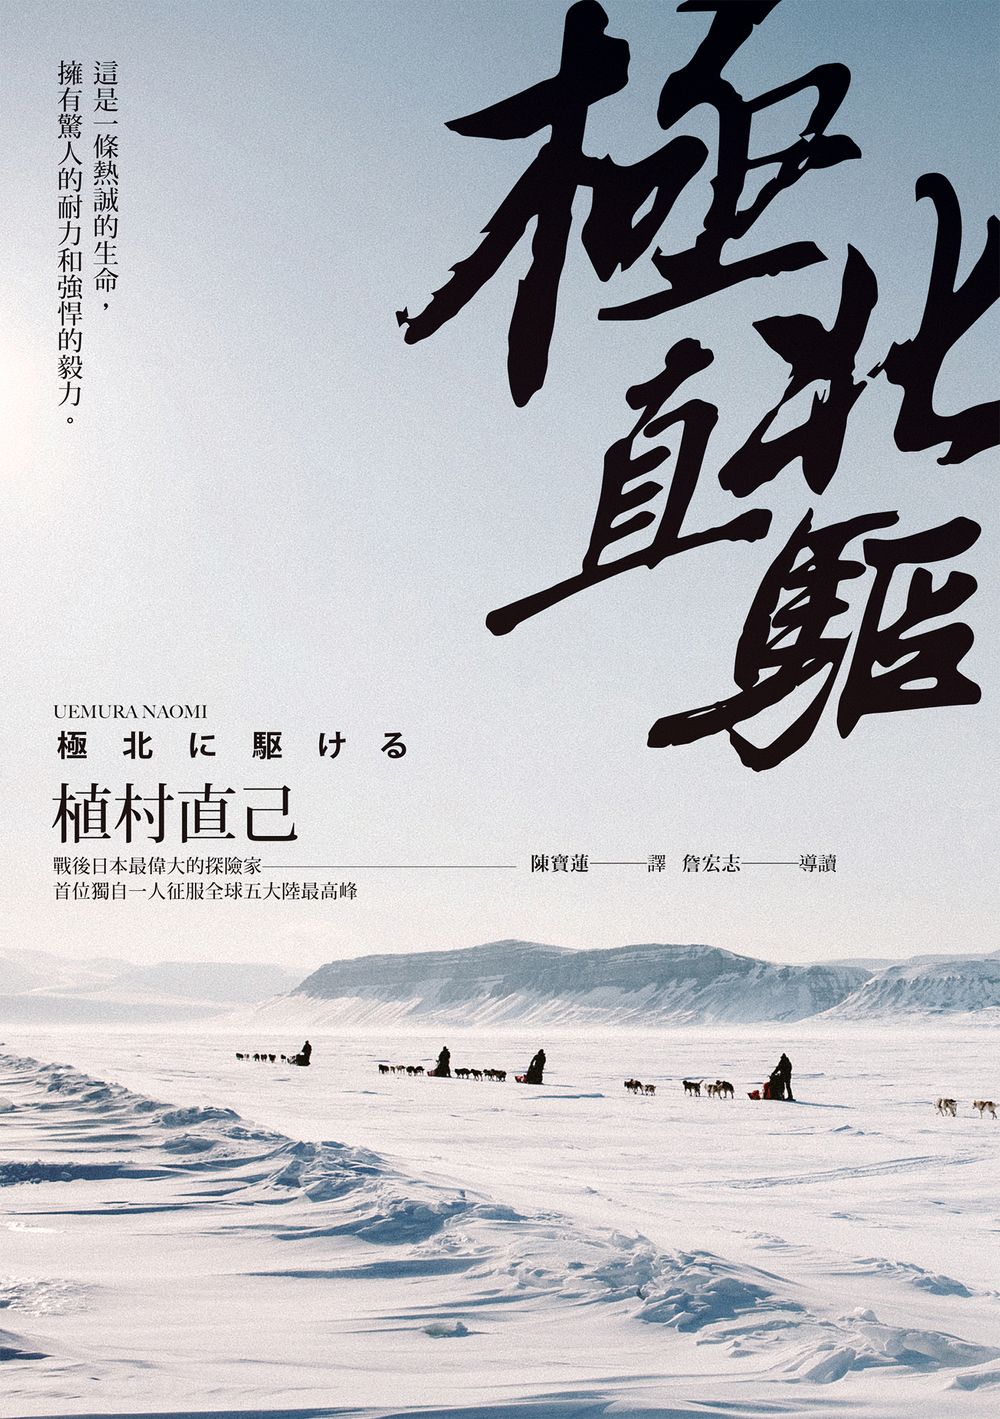 極北直驅(平裝本經典回歸)：日本最偉大探險家植村直己極地探險經典作 (電子書)